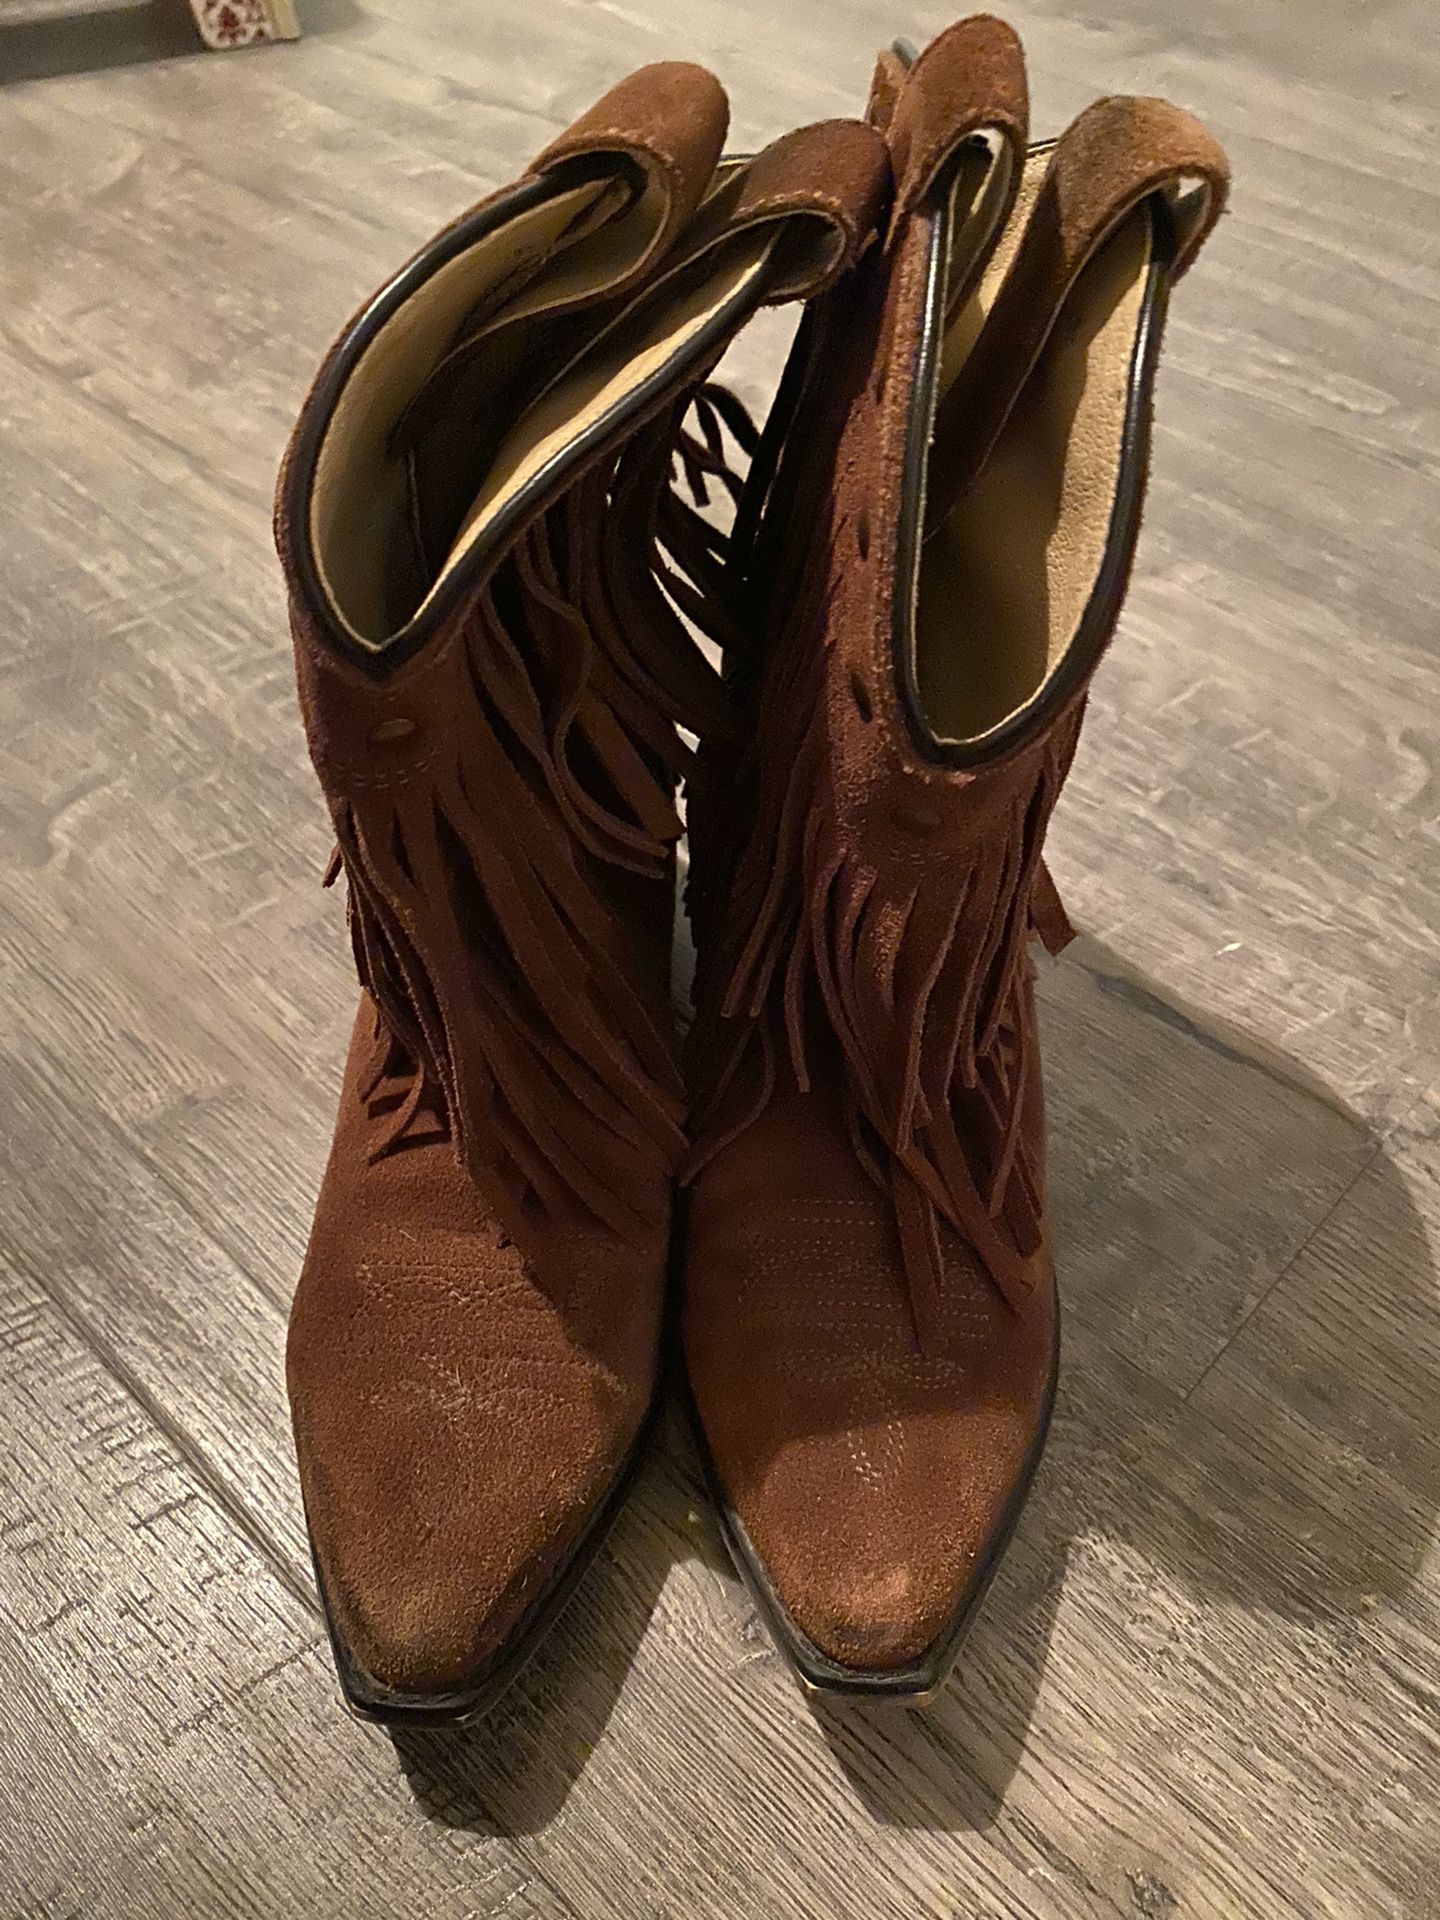 Fringe Boots - Size 3👢